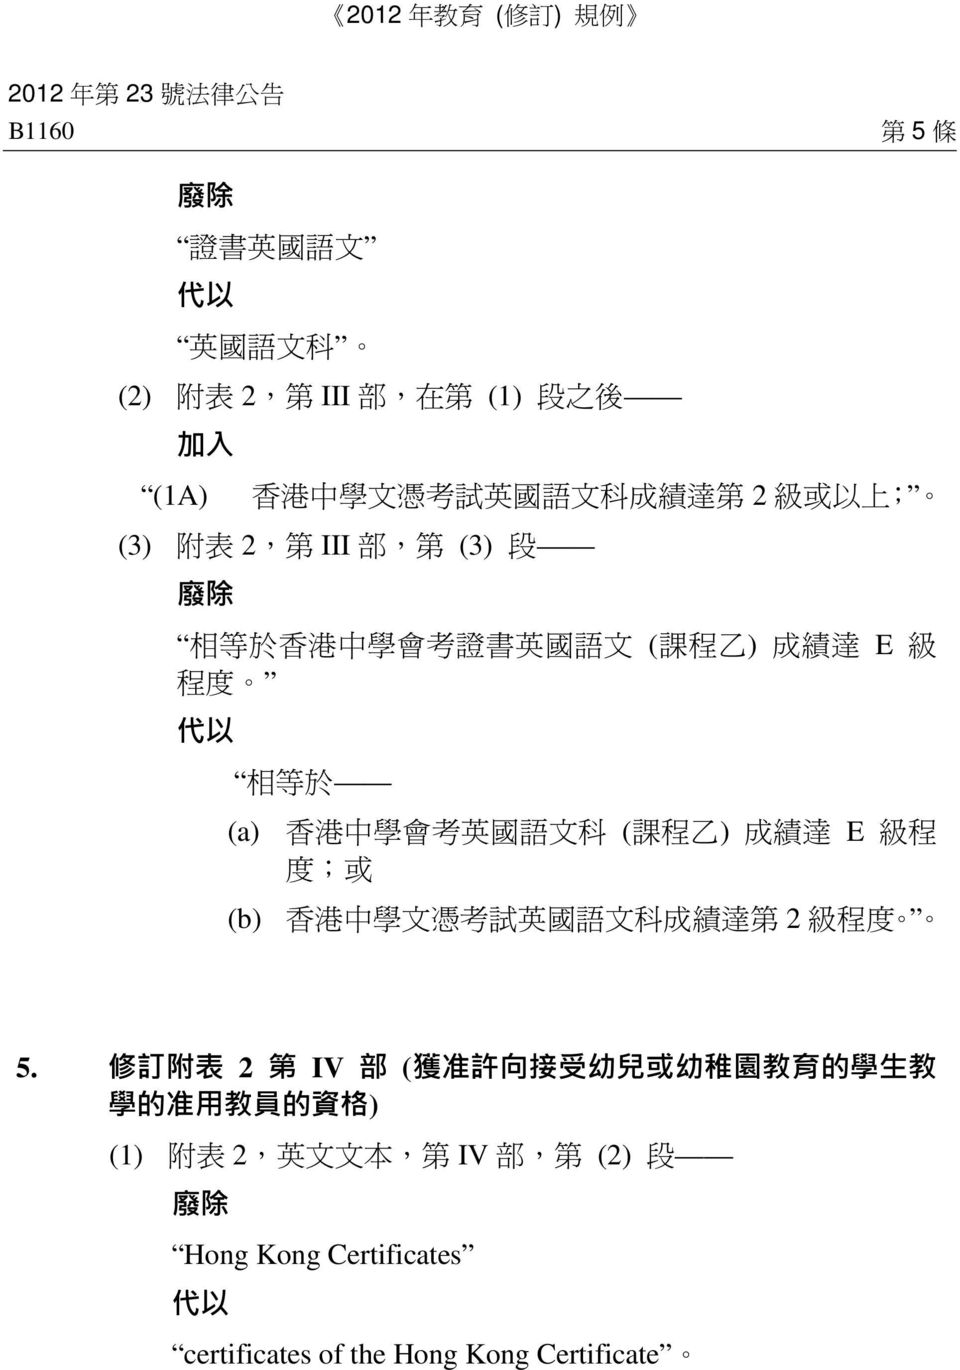 會 考 英 國 語 文 科 ( 課 程 乙 ) 成 績 達 E 級 程 度 ; 或 (b) 香 港 中 學 文 憑 考 試 英 國 語 文 科 成 績 達 第 2 級 程 度 5.